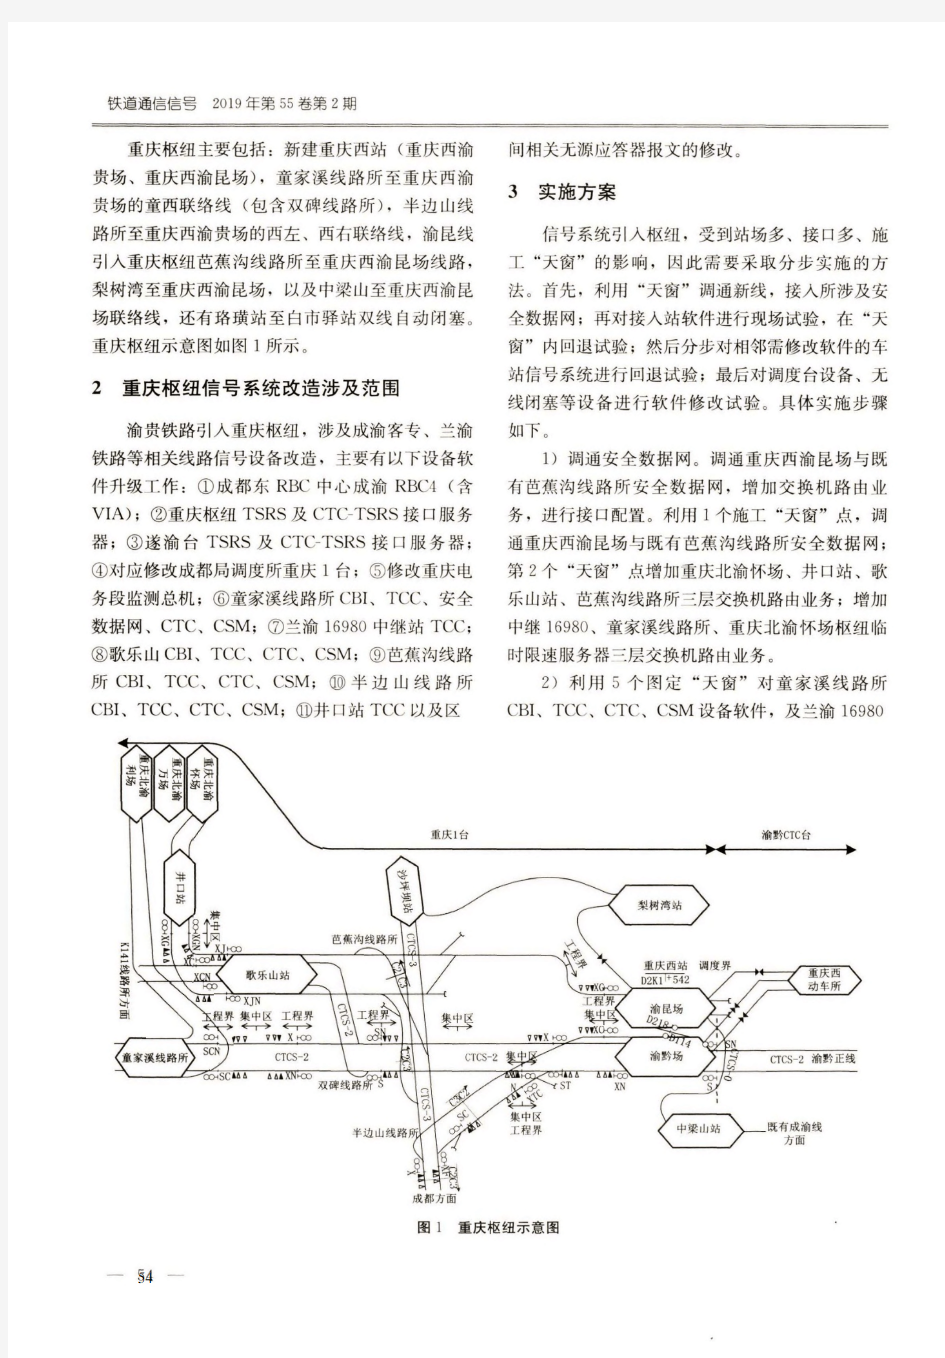 渝贵铁路引入重庆枢纽信号系统的实施与探讨